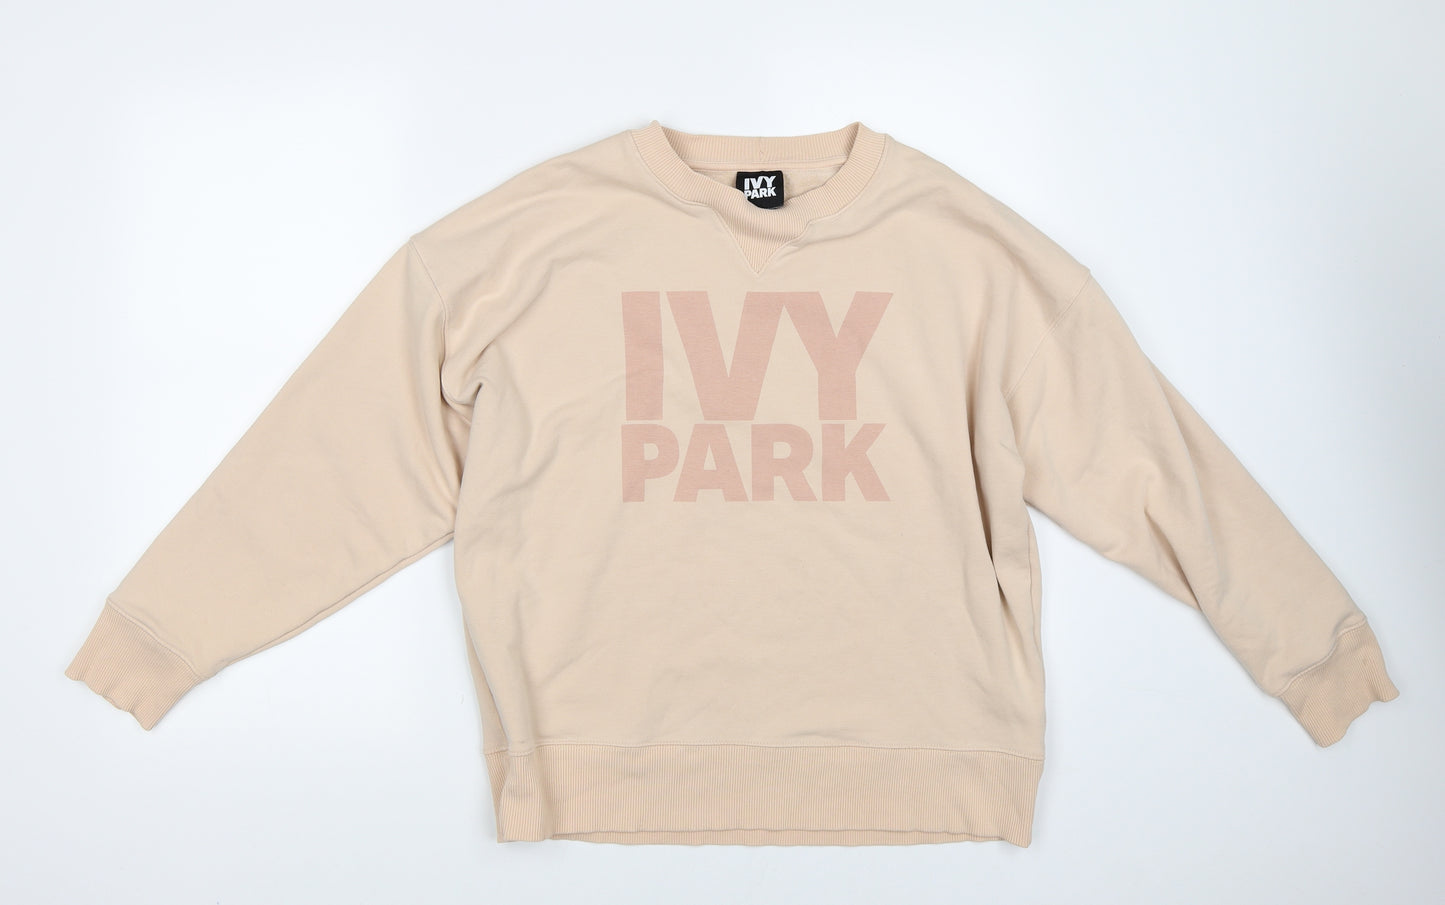 IVY PARK Womens Orange   Pullover Sweatshirt Size M